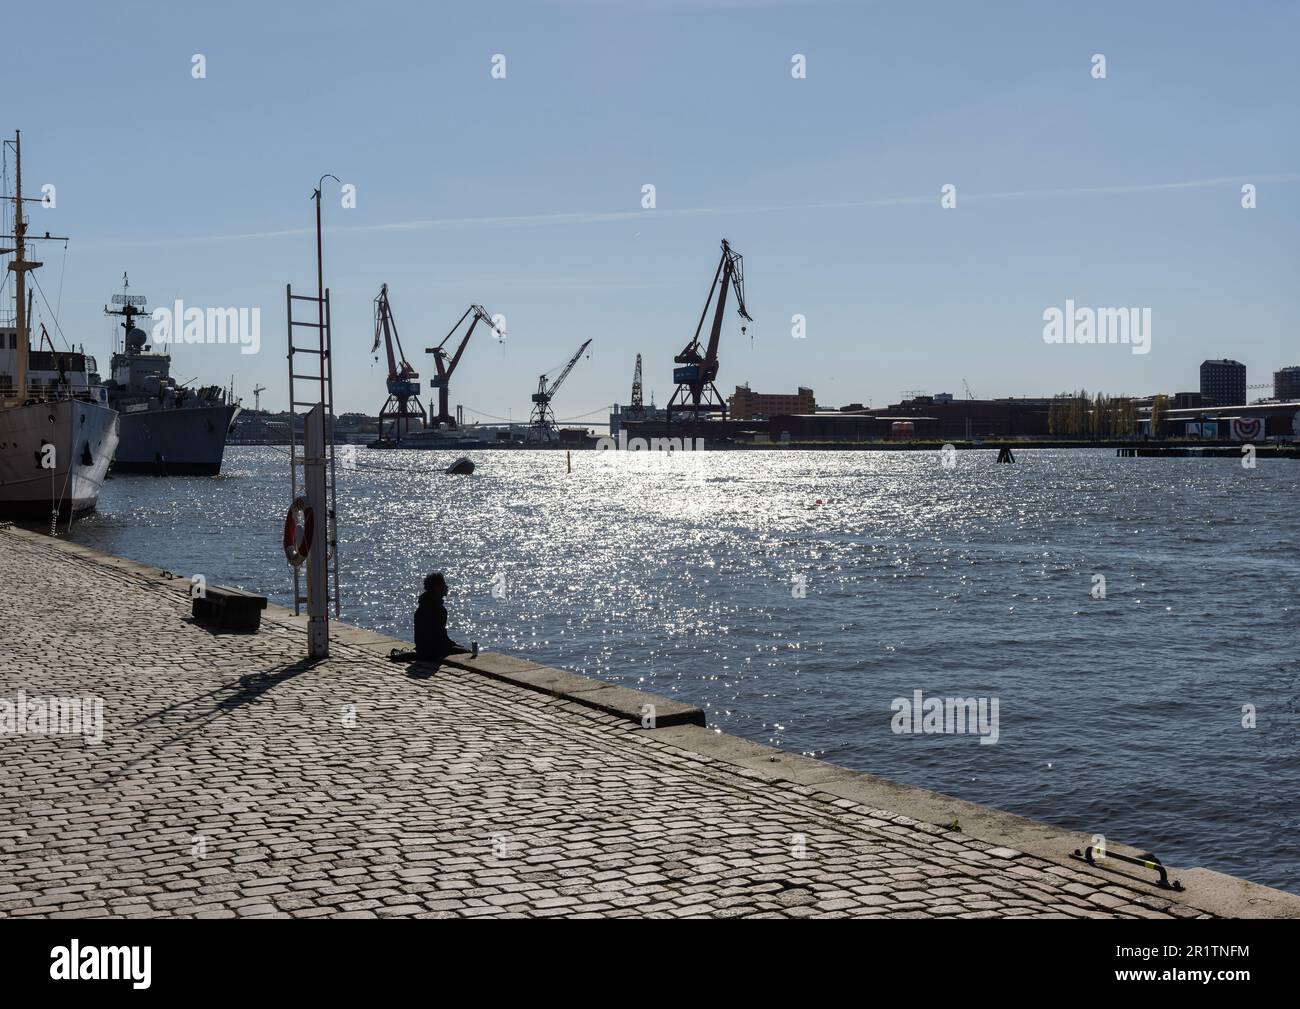 Silhouette einer Person mit Blick auf den Gota-Kanal, Gota Alv mit Kränen und Schiffen im Hintergrund von Jussi Bjorling Plats. Göteborg Stockfoto